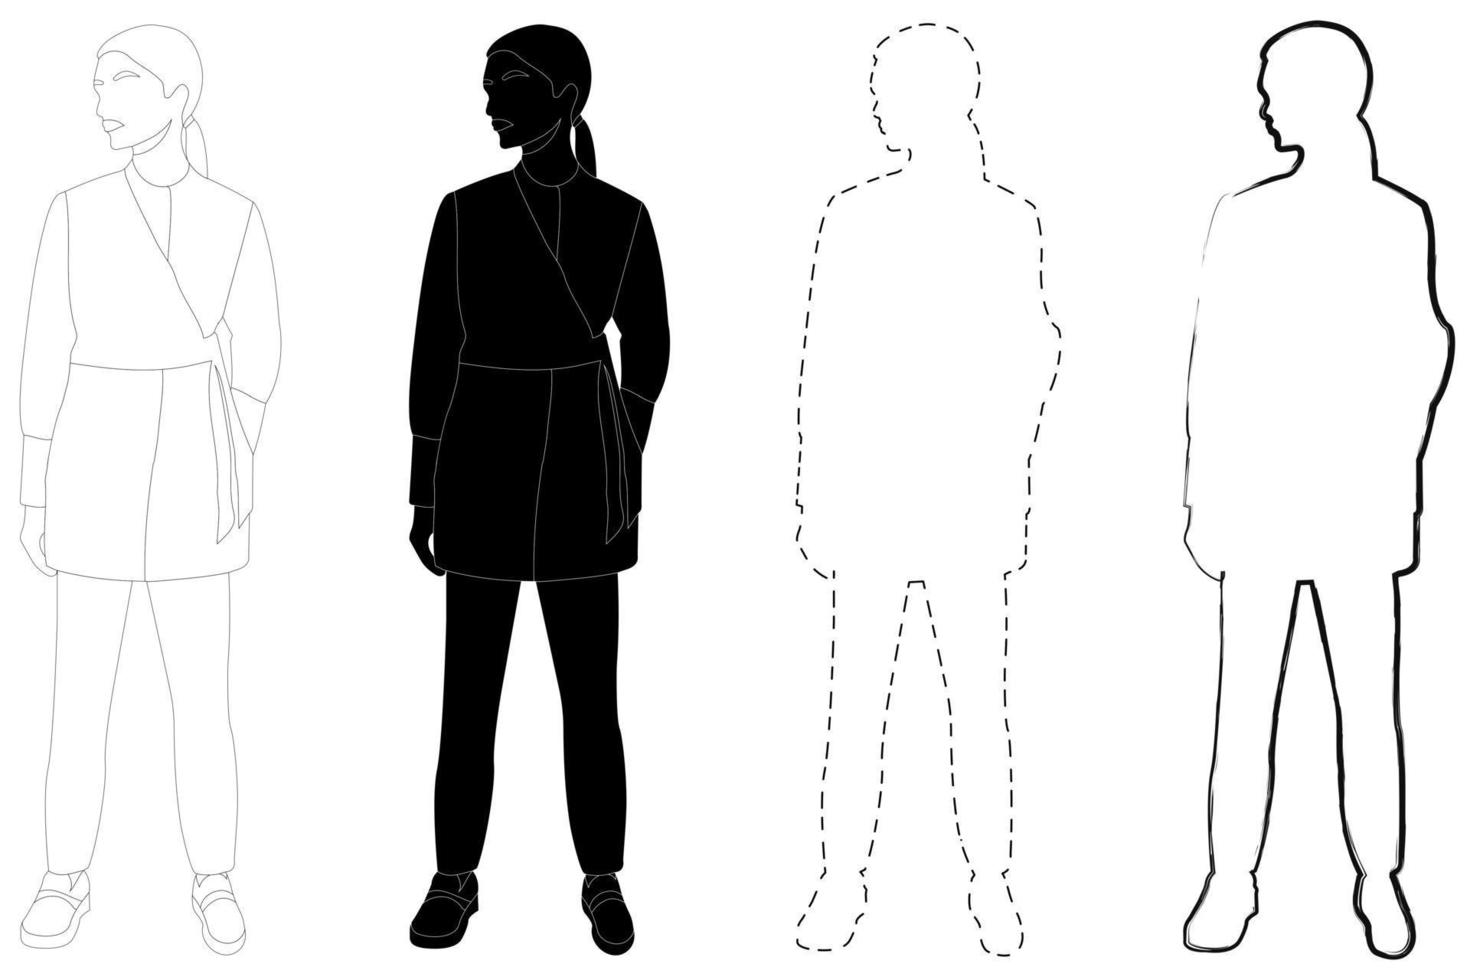 Skizzieren Sie den Umriss der Silhouette eines Mädchens in einem modischen Anzug. Doodle Schwarz-Weiß-Strichzeichnung. vektor